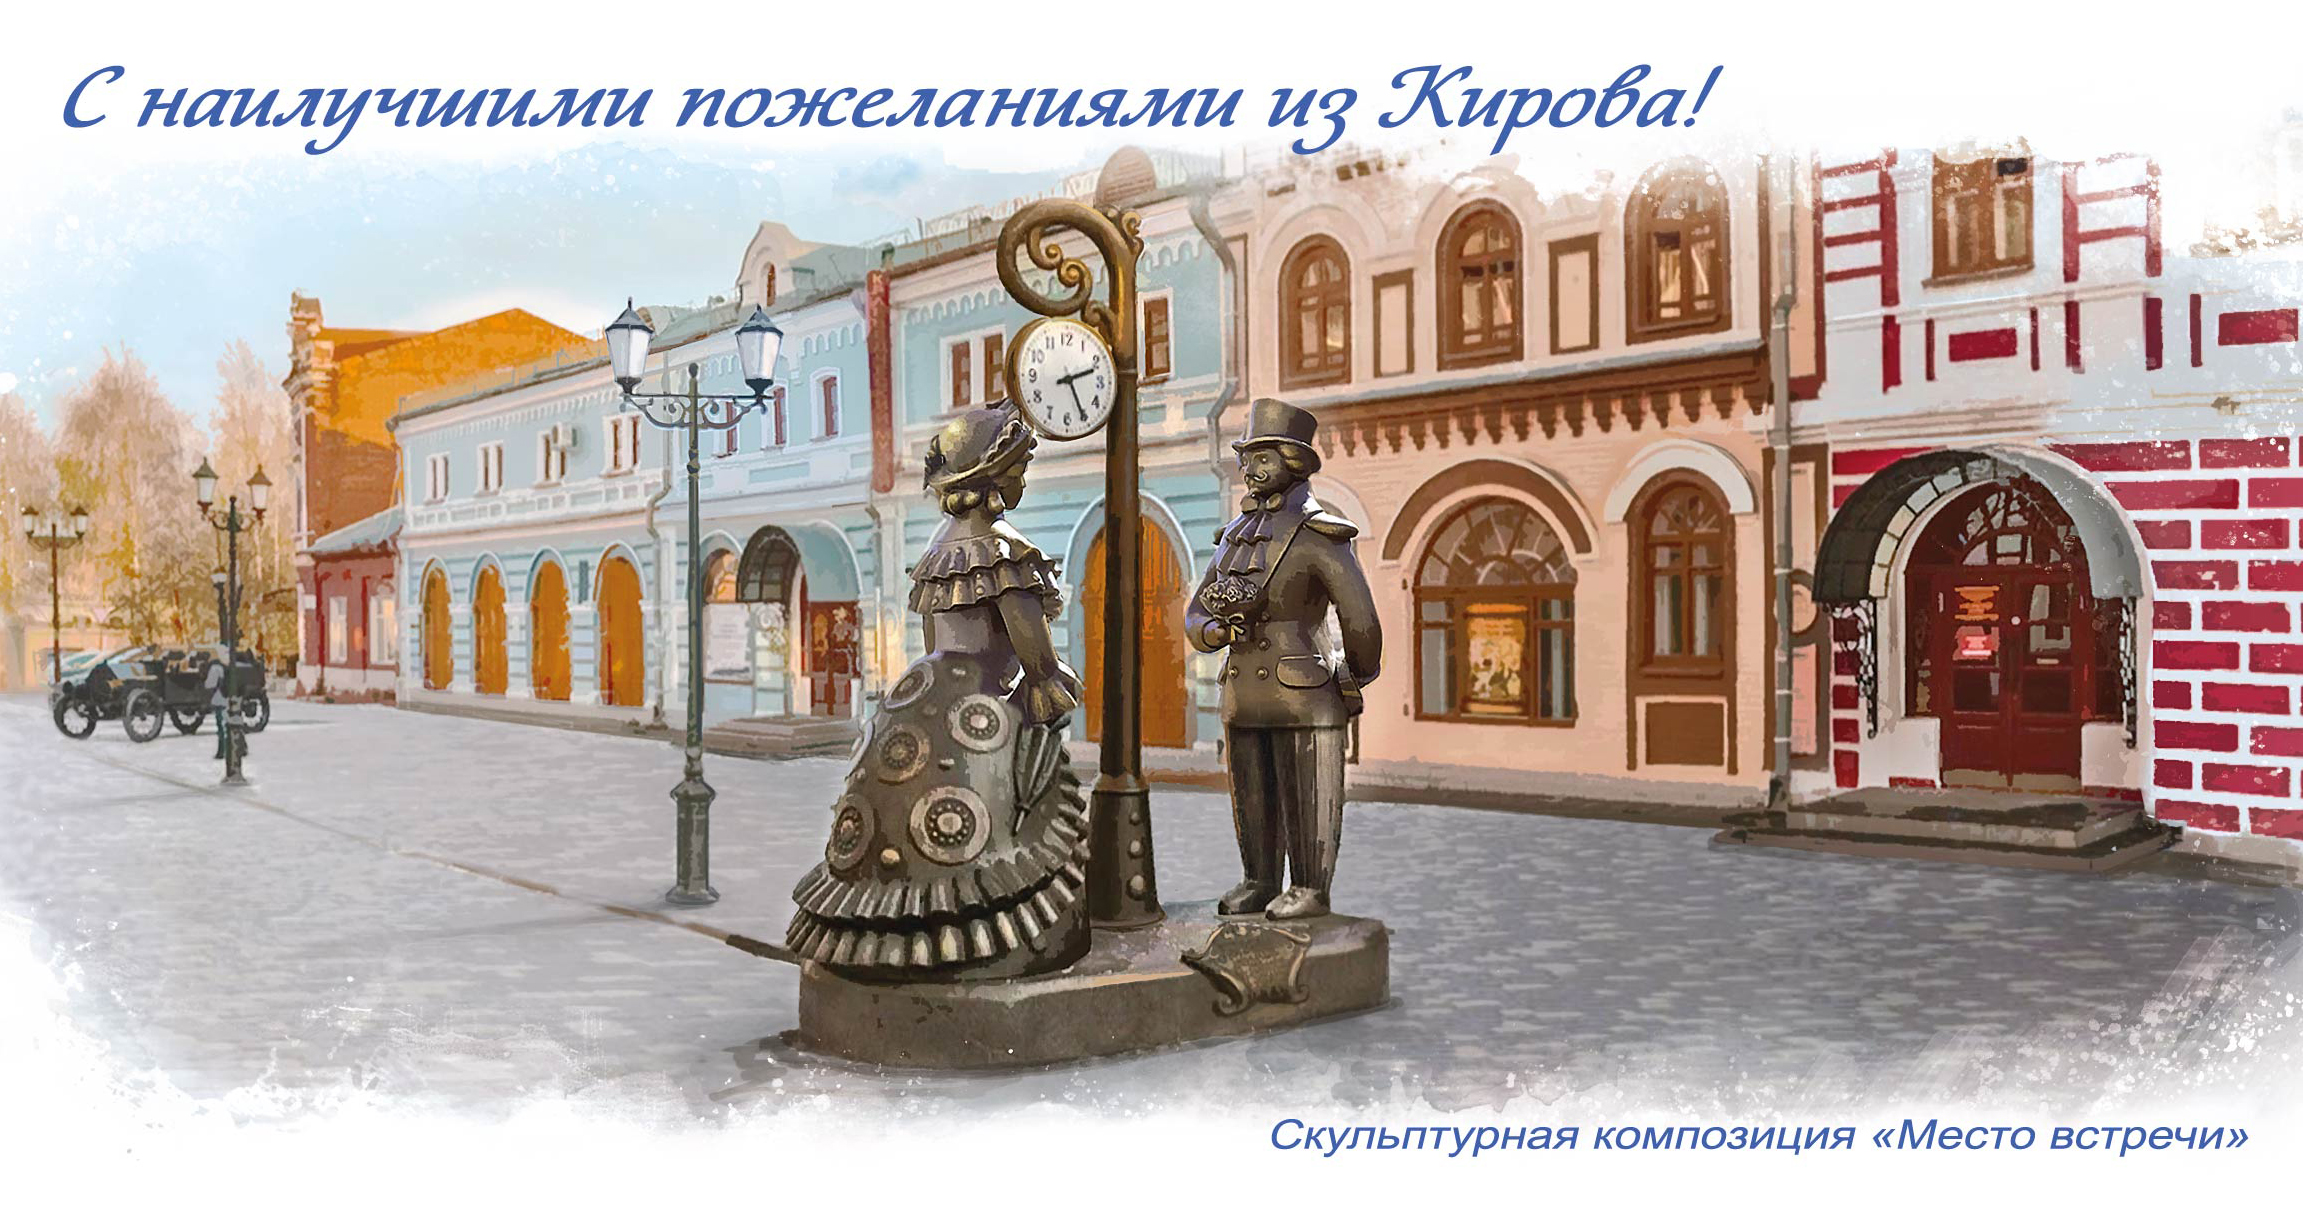 В честь 650-летия г. Кирова в почтовое обращение вышла тематическая открытка.